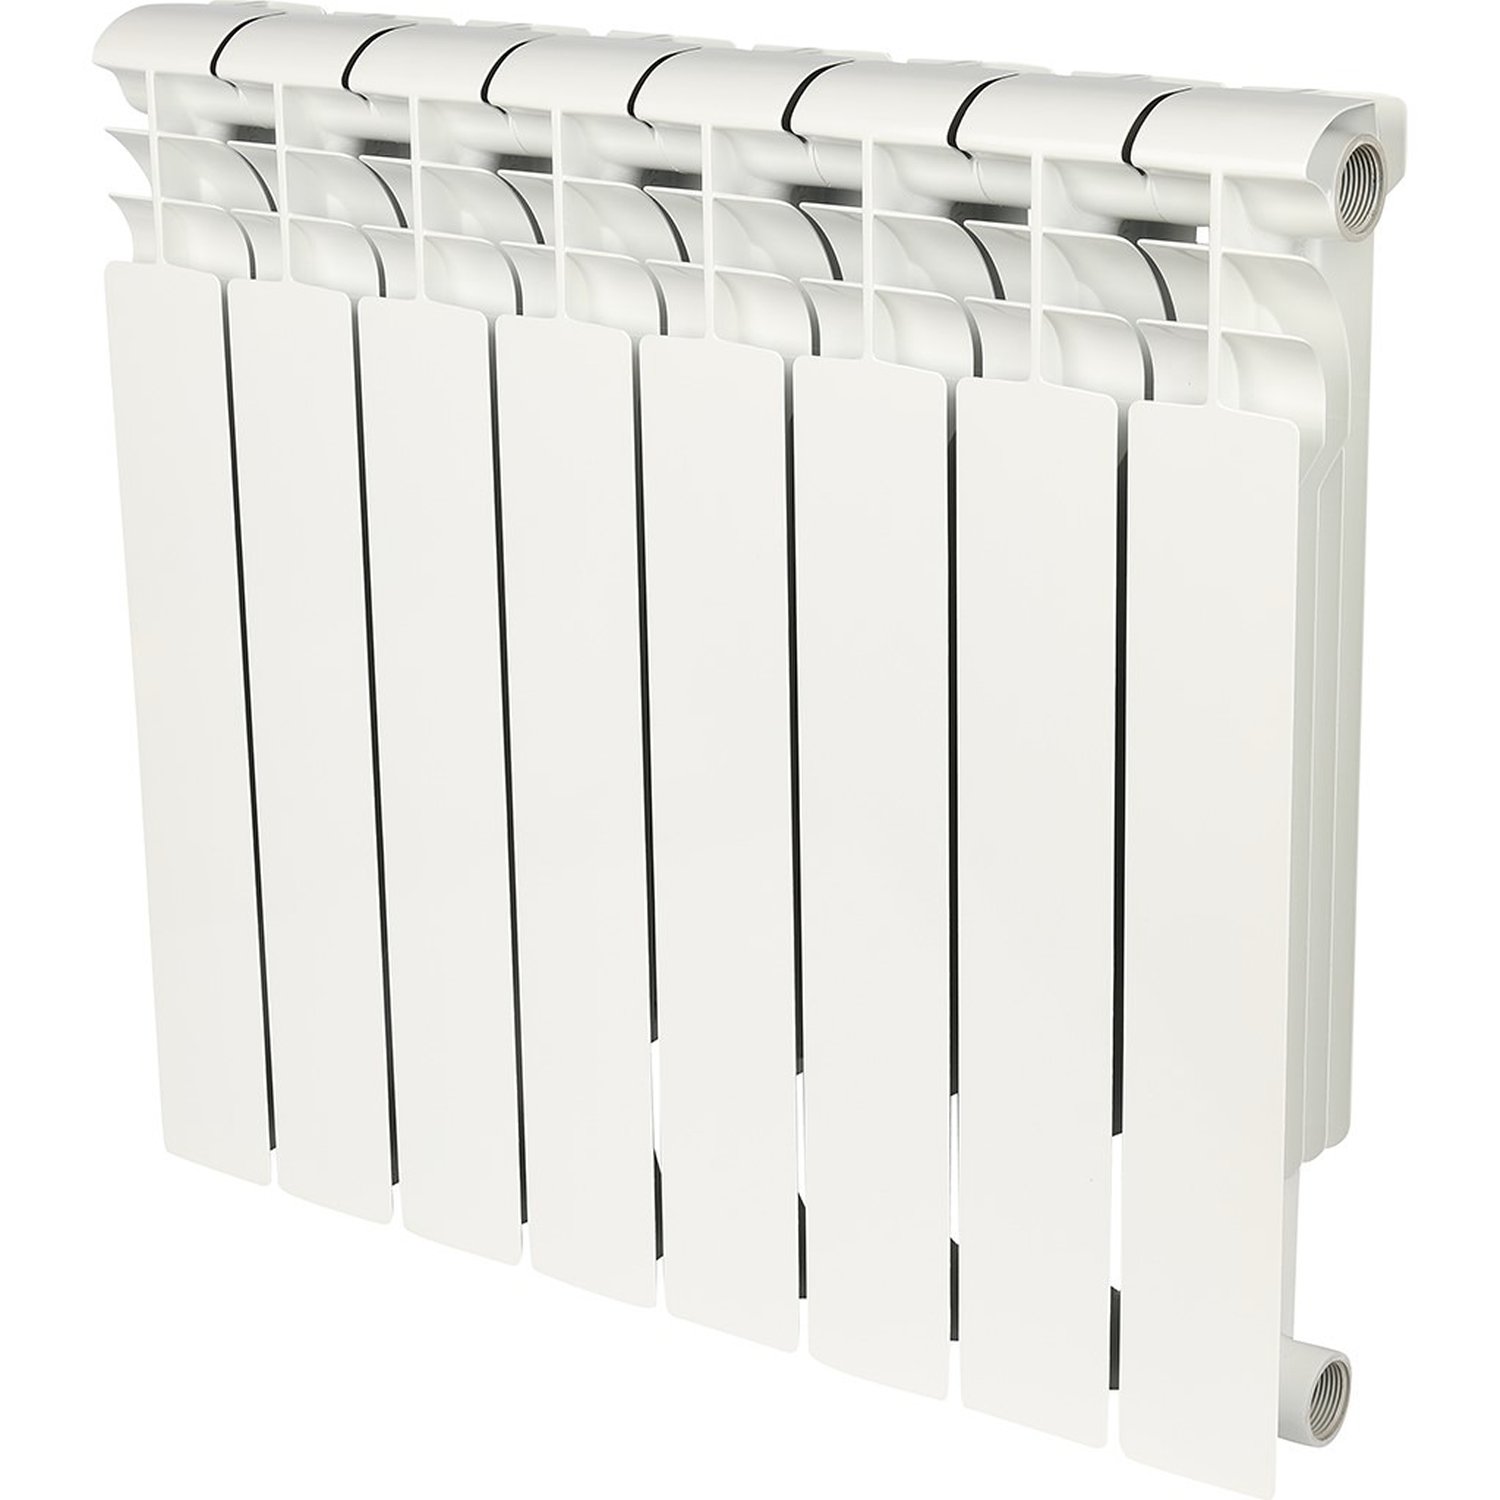 Радиатор Биметаллический AQUAPROM  8 секций, 500мм/80мм, 130Вт, белый, — купить в Кургане, цены в интернет-магазине «АкваТехника»